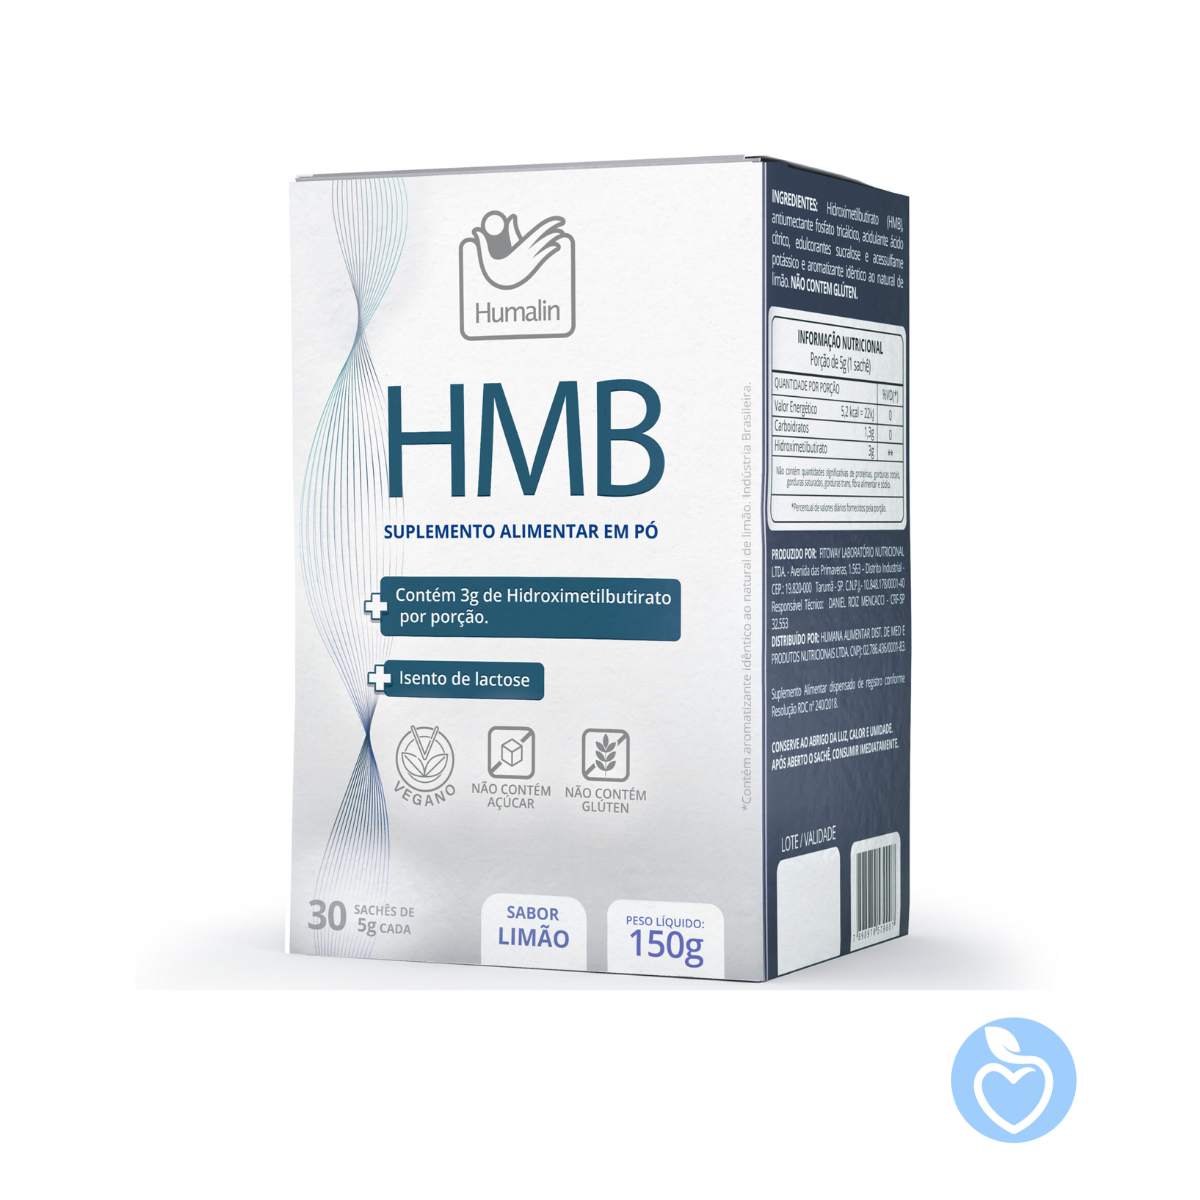 HMB HUMALIN - Caixa com 30 sachês 5g